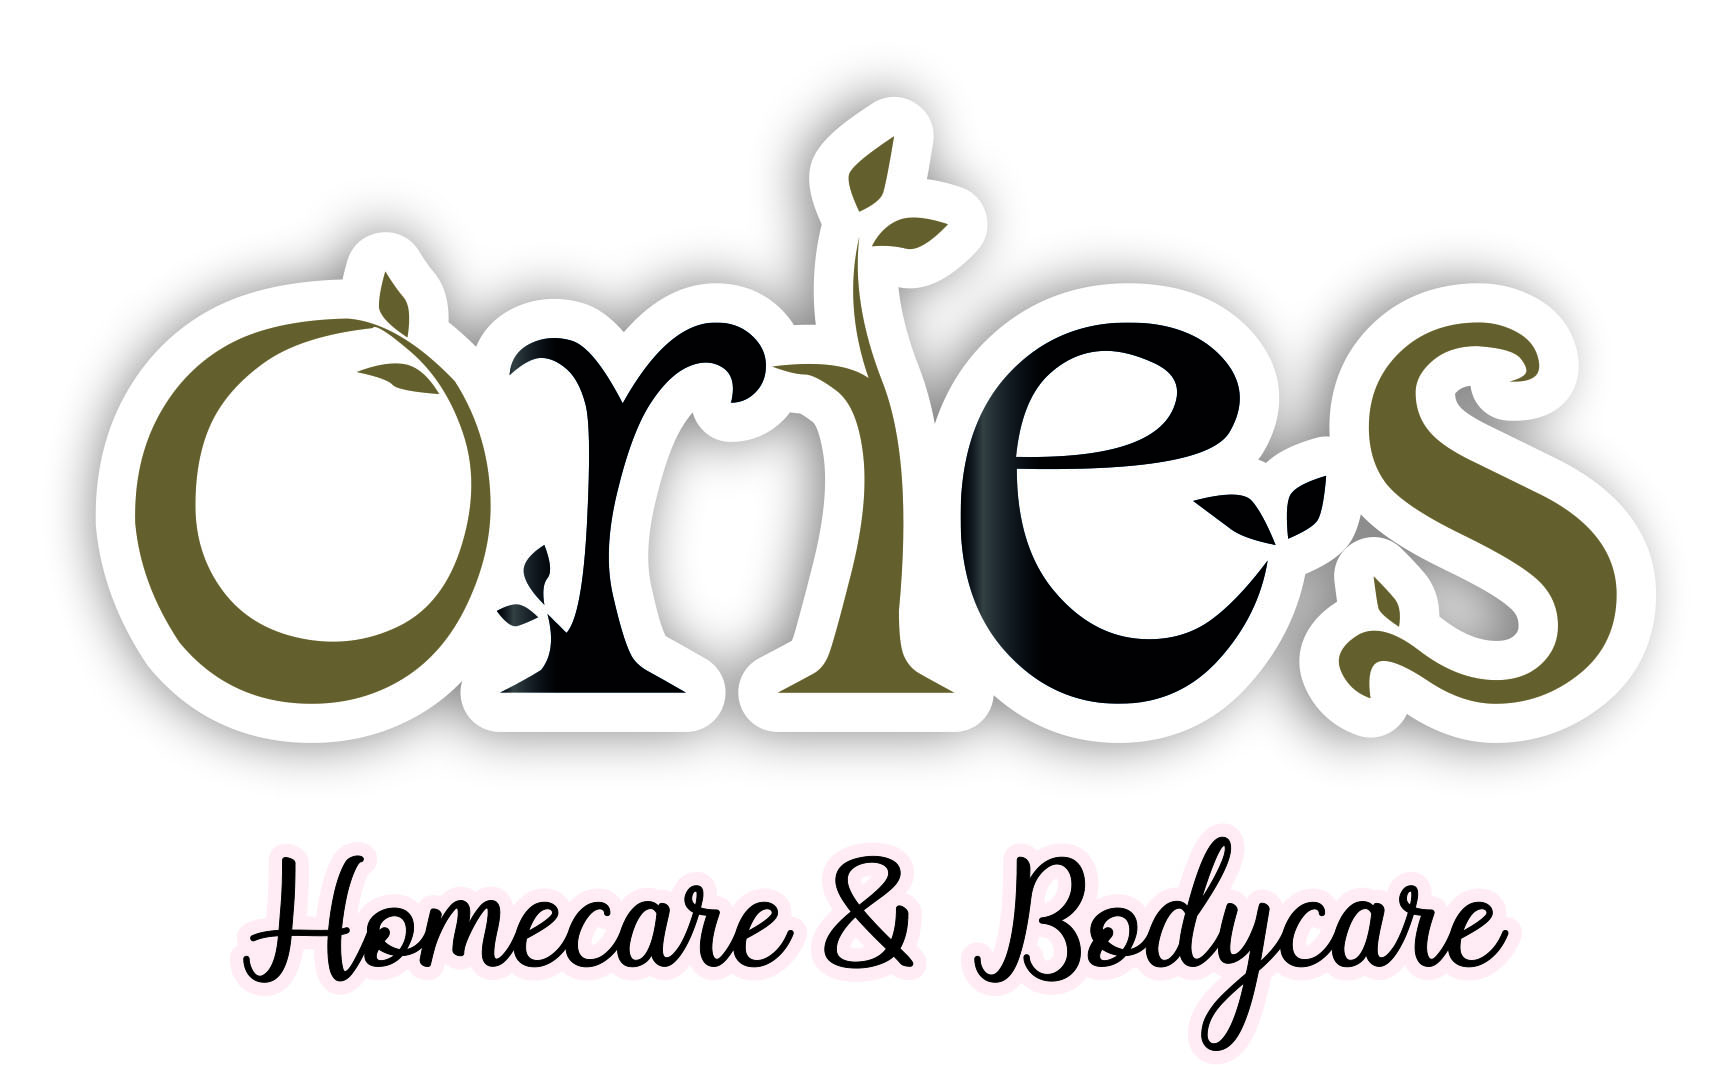 BodyCare Logo by Bombom_88 on Dribbble